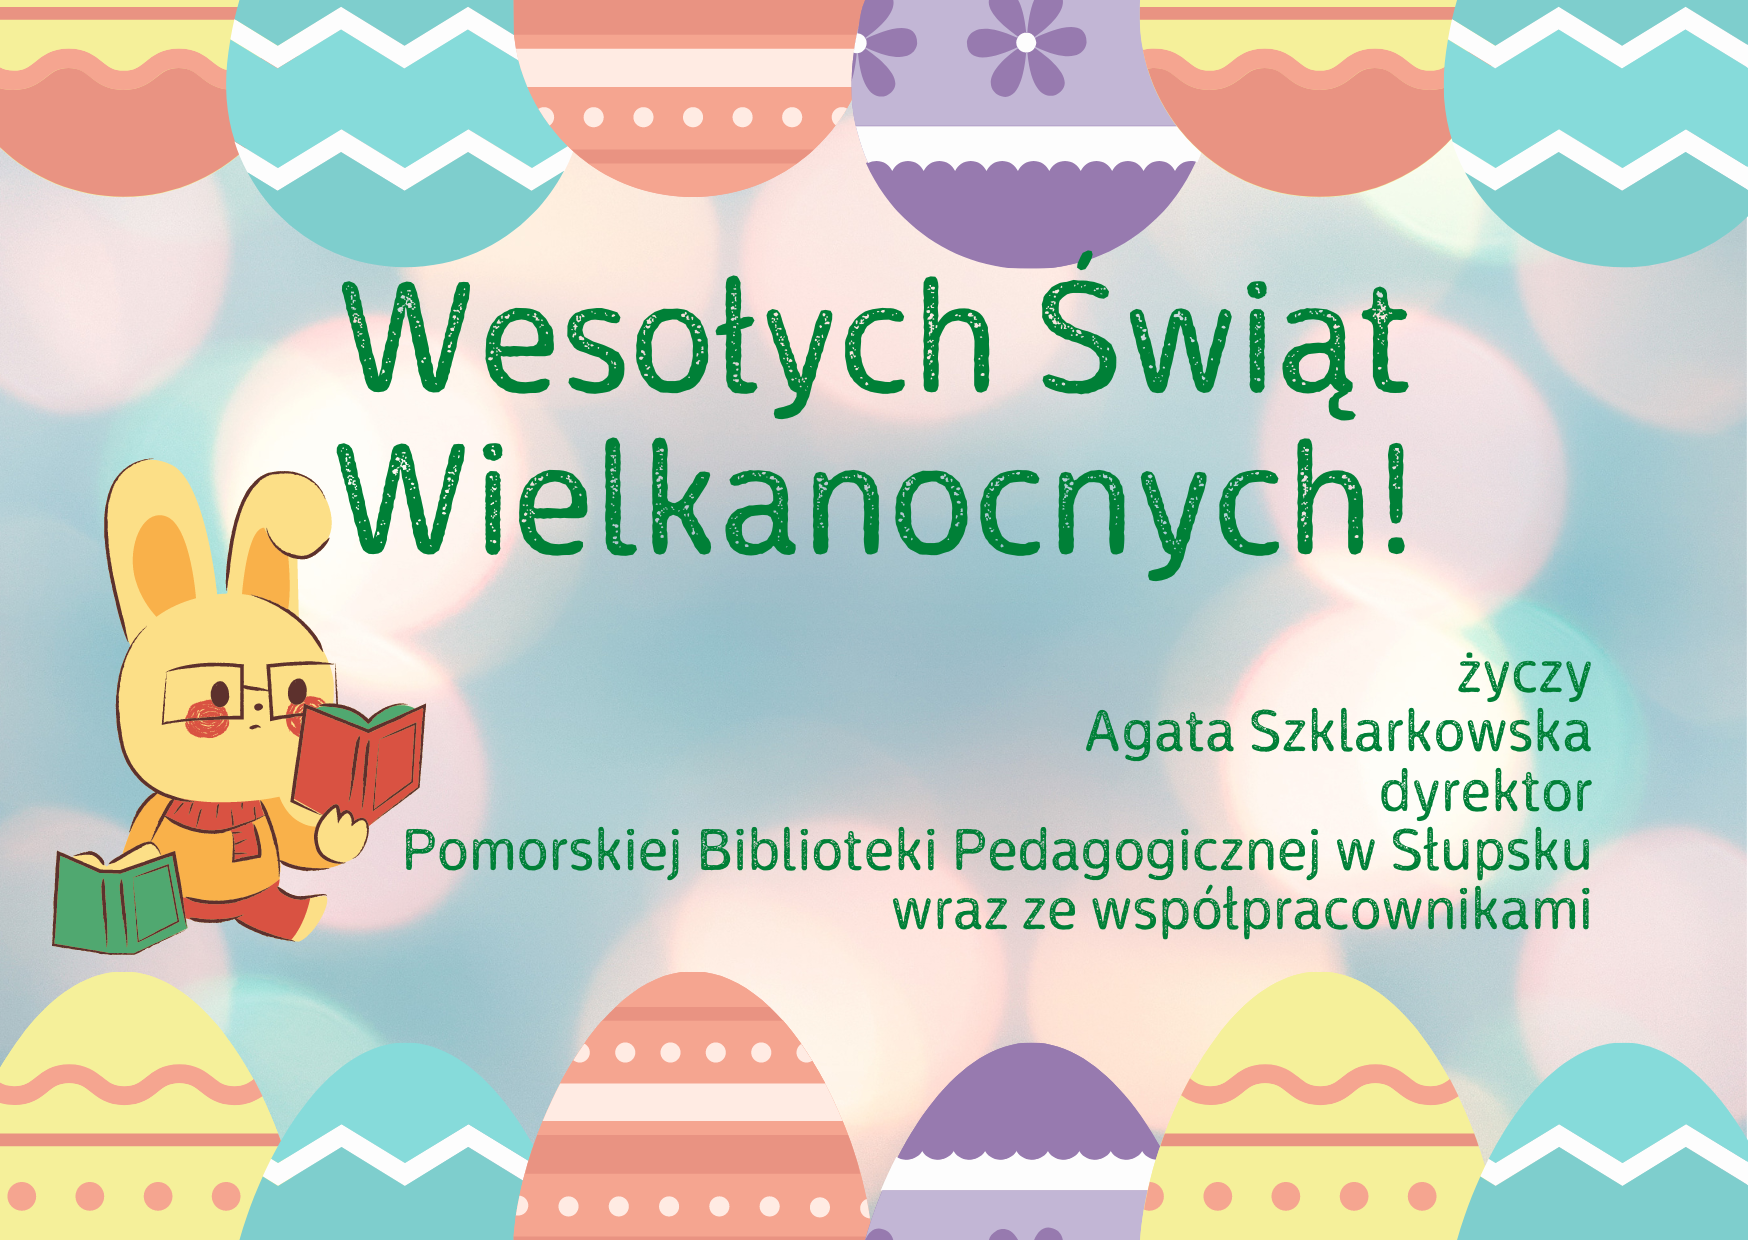 Wesołych Świąt Wielkanocnych życzy Agata Szklarkowska, dyrektor Pomorskiej Biblioteki Pedagogicznej w Słupsku wraz ze współpracownikami